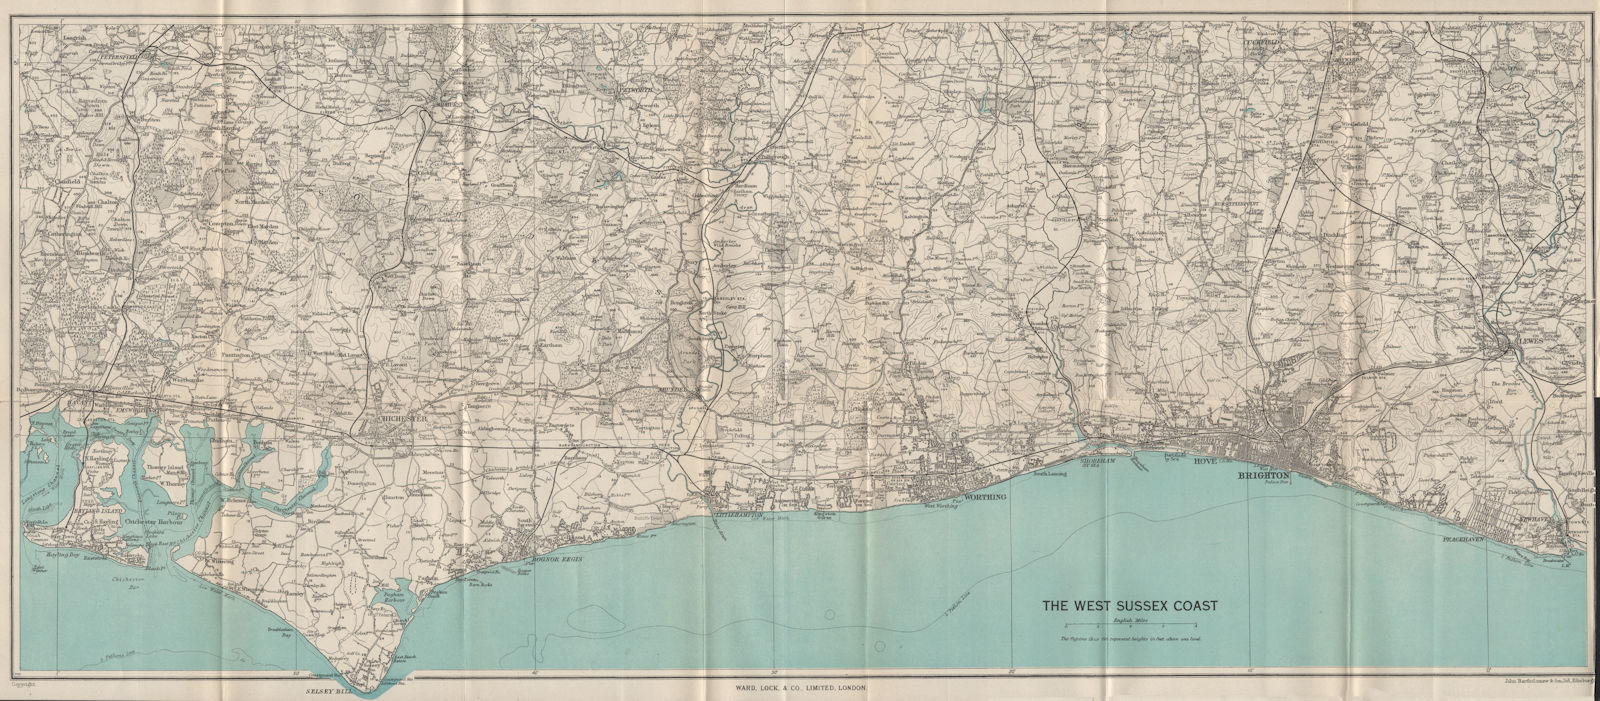 WEST SUSSEX COAST South Downs Brighton Worthing Bognor Regis Chichester 1950 map